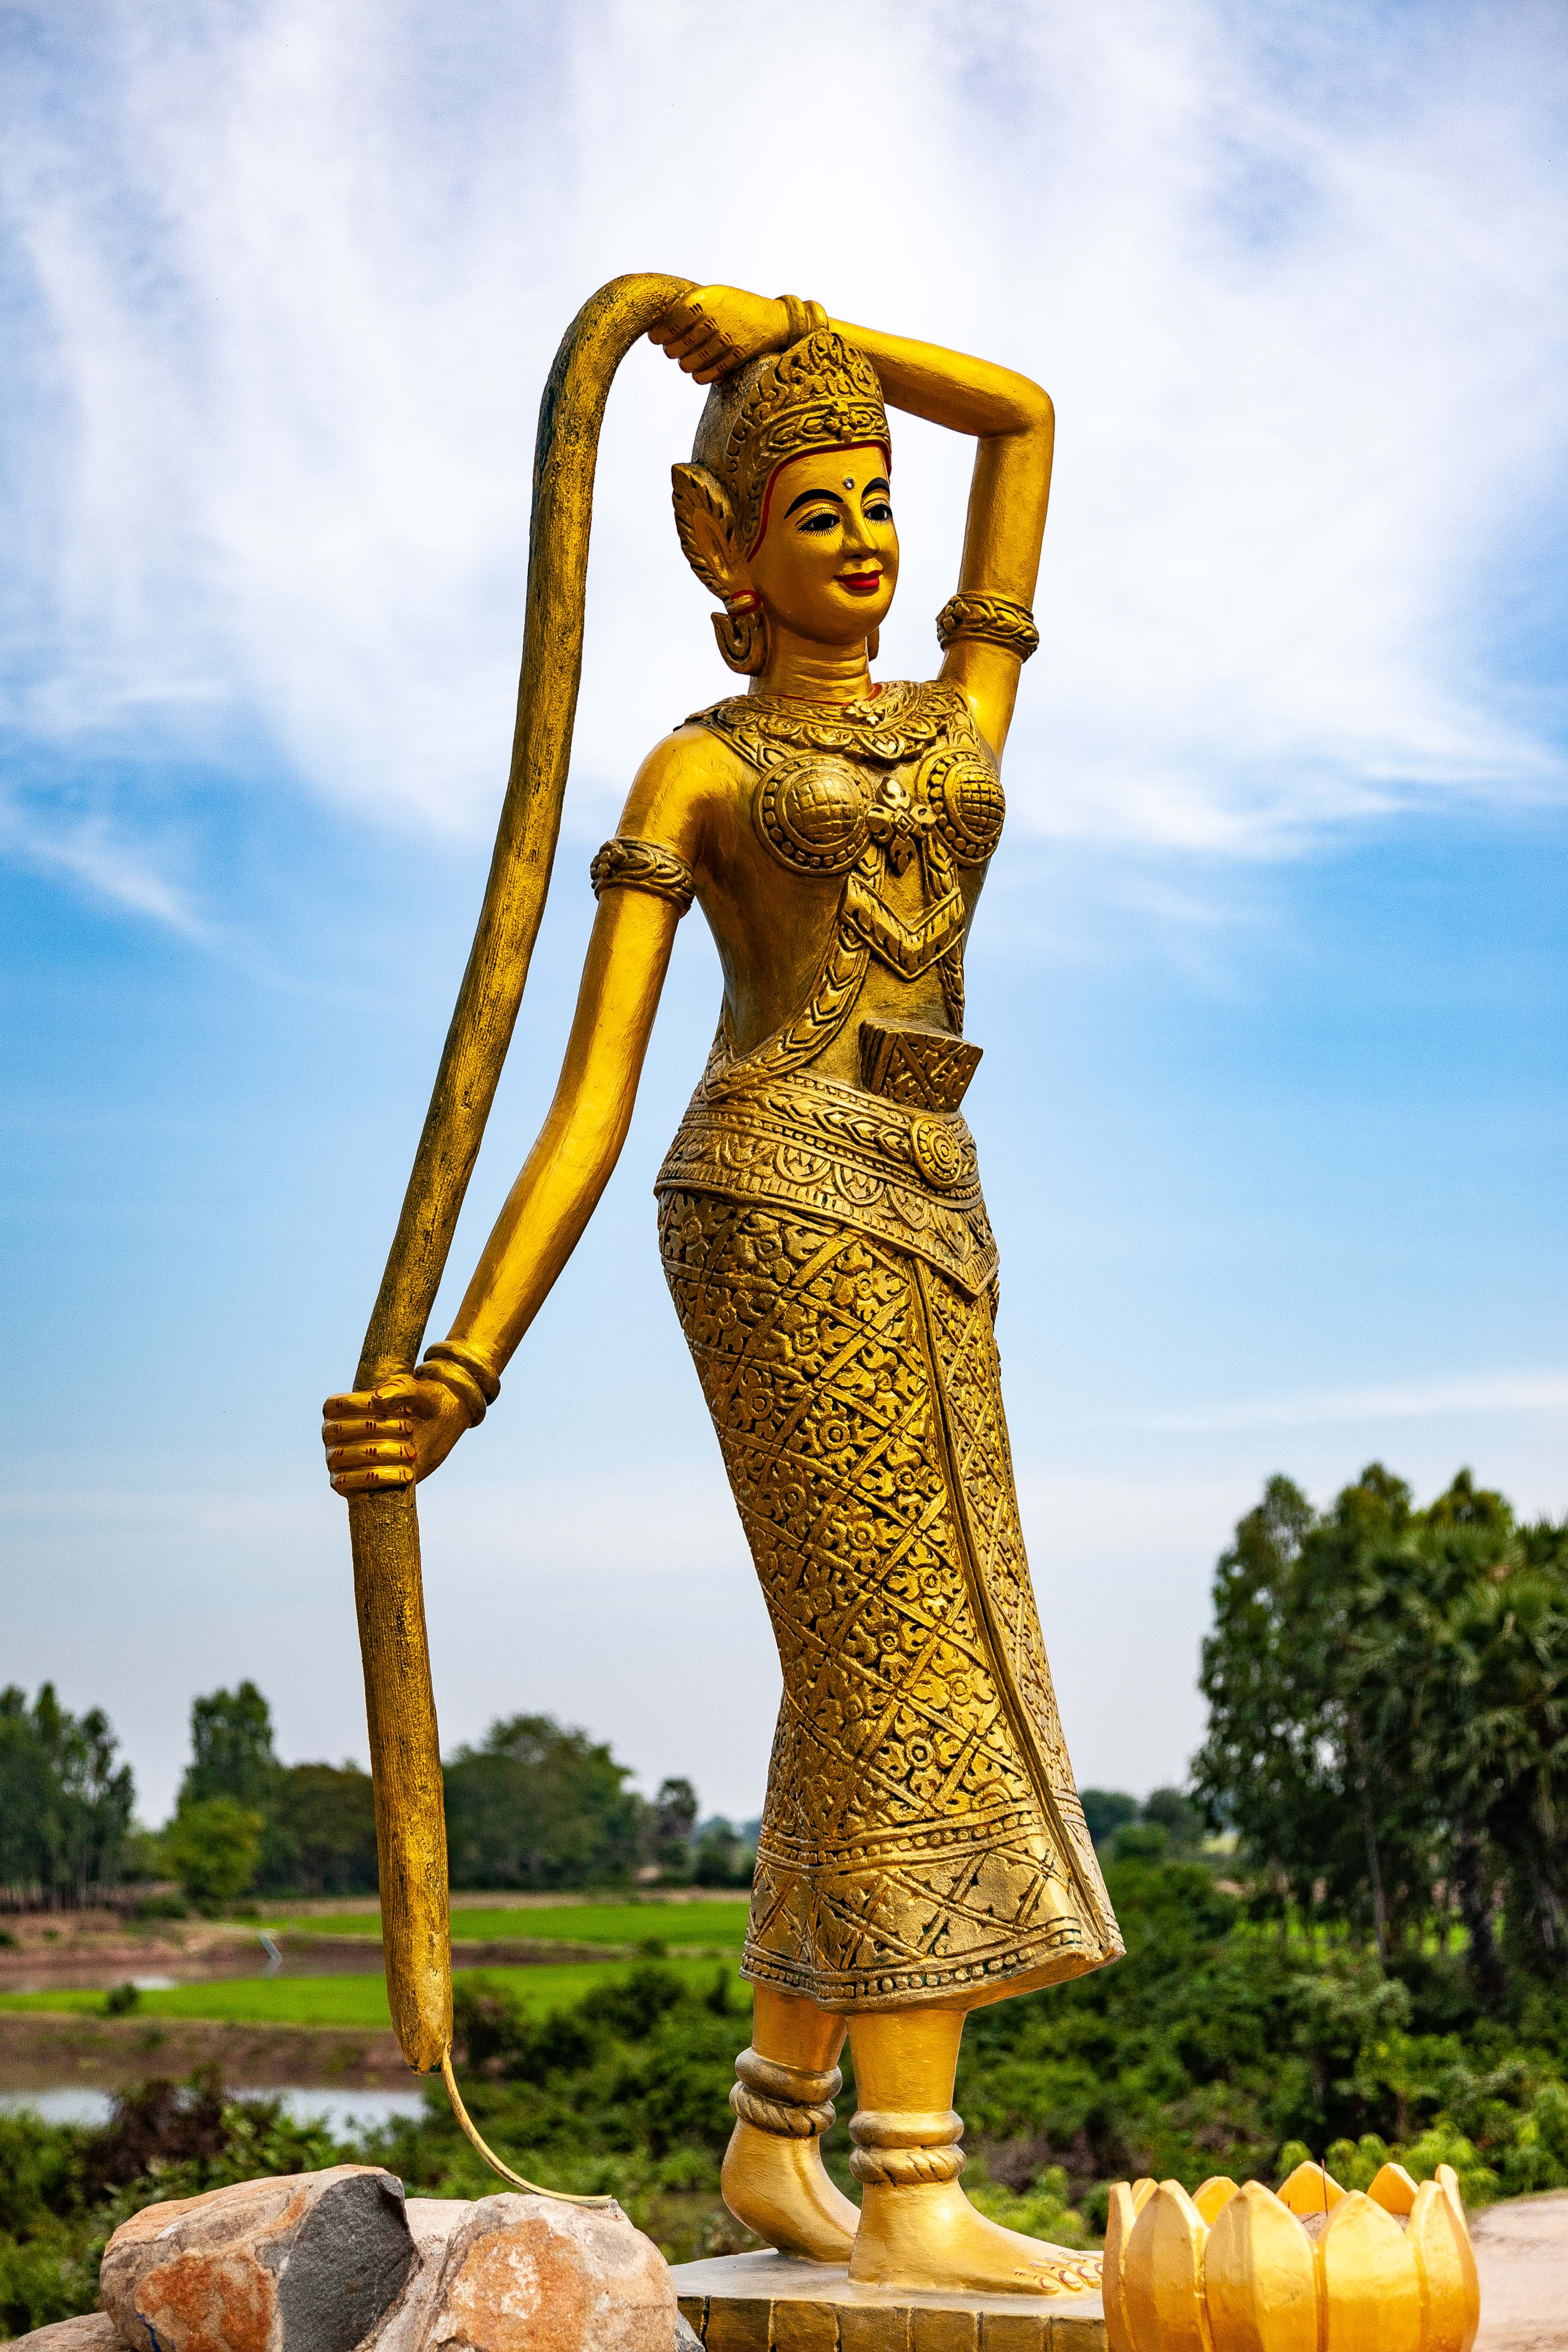 Cambodia, Prey Veaeng Prov, Goddess, 2010, IMG 5182